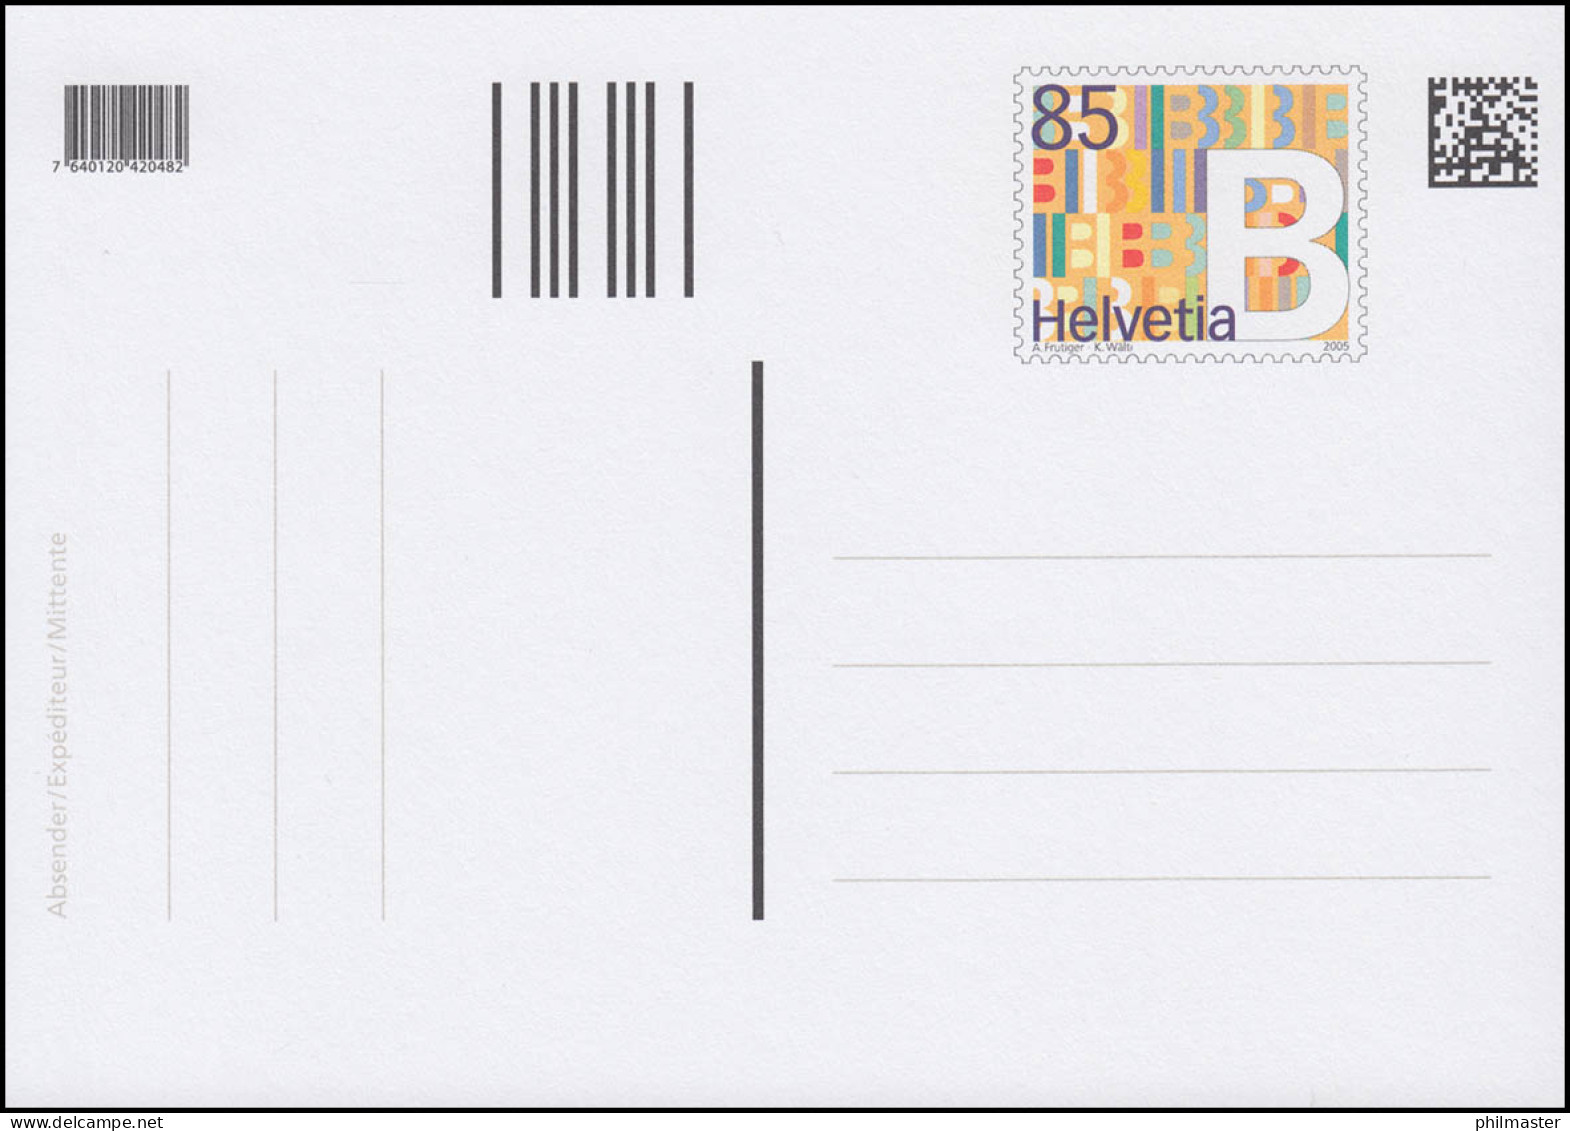 Schweiz Postkarte P 308 Dauerausgabe B-Post 2005, ** Postfrisch - Ganzsachen